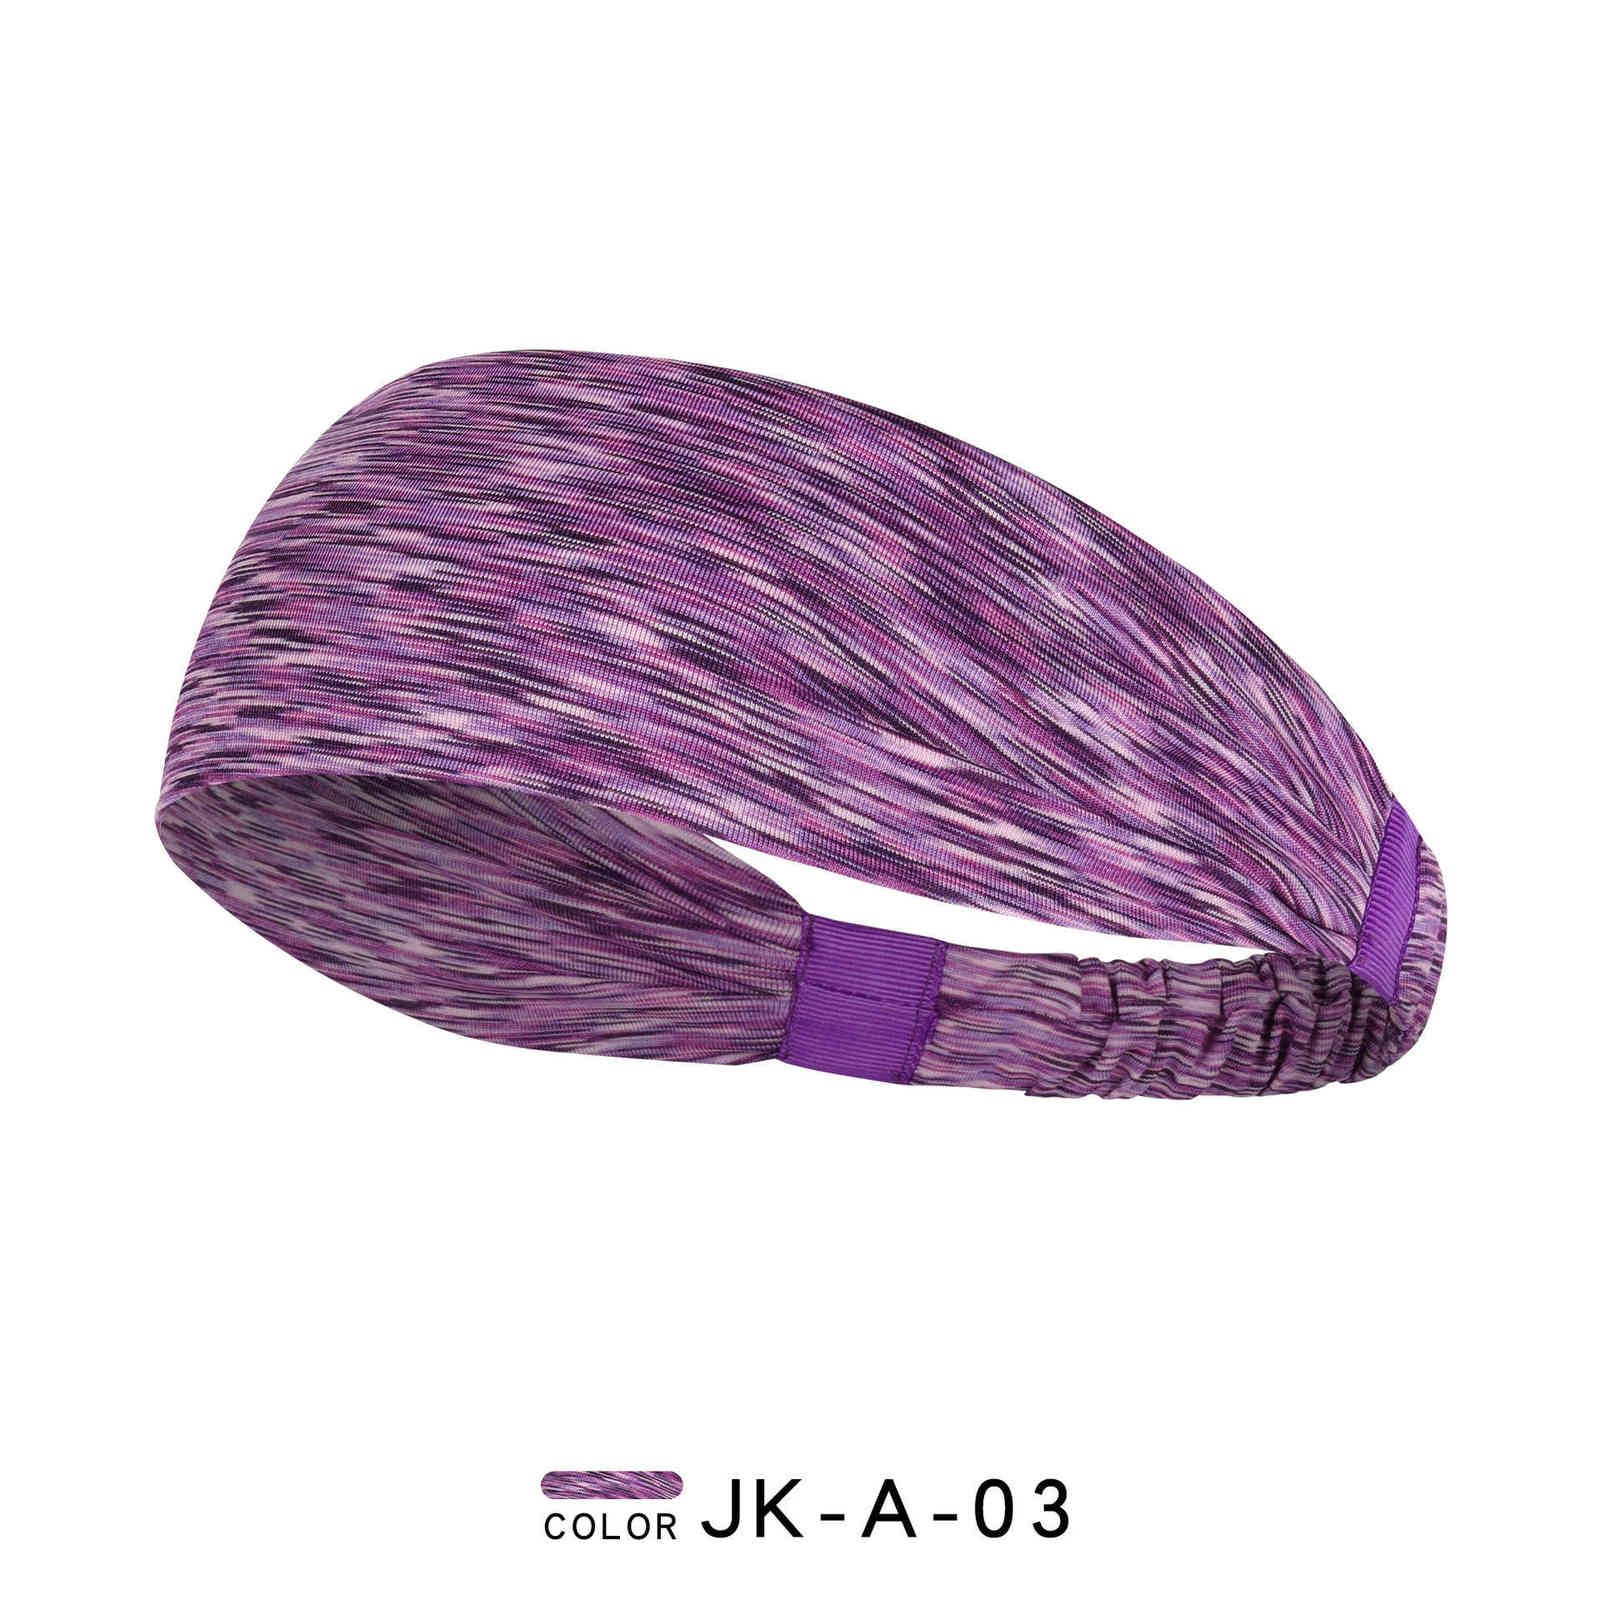 Jk-a-03 Purple